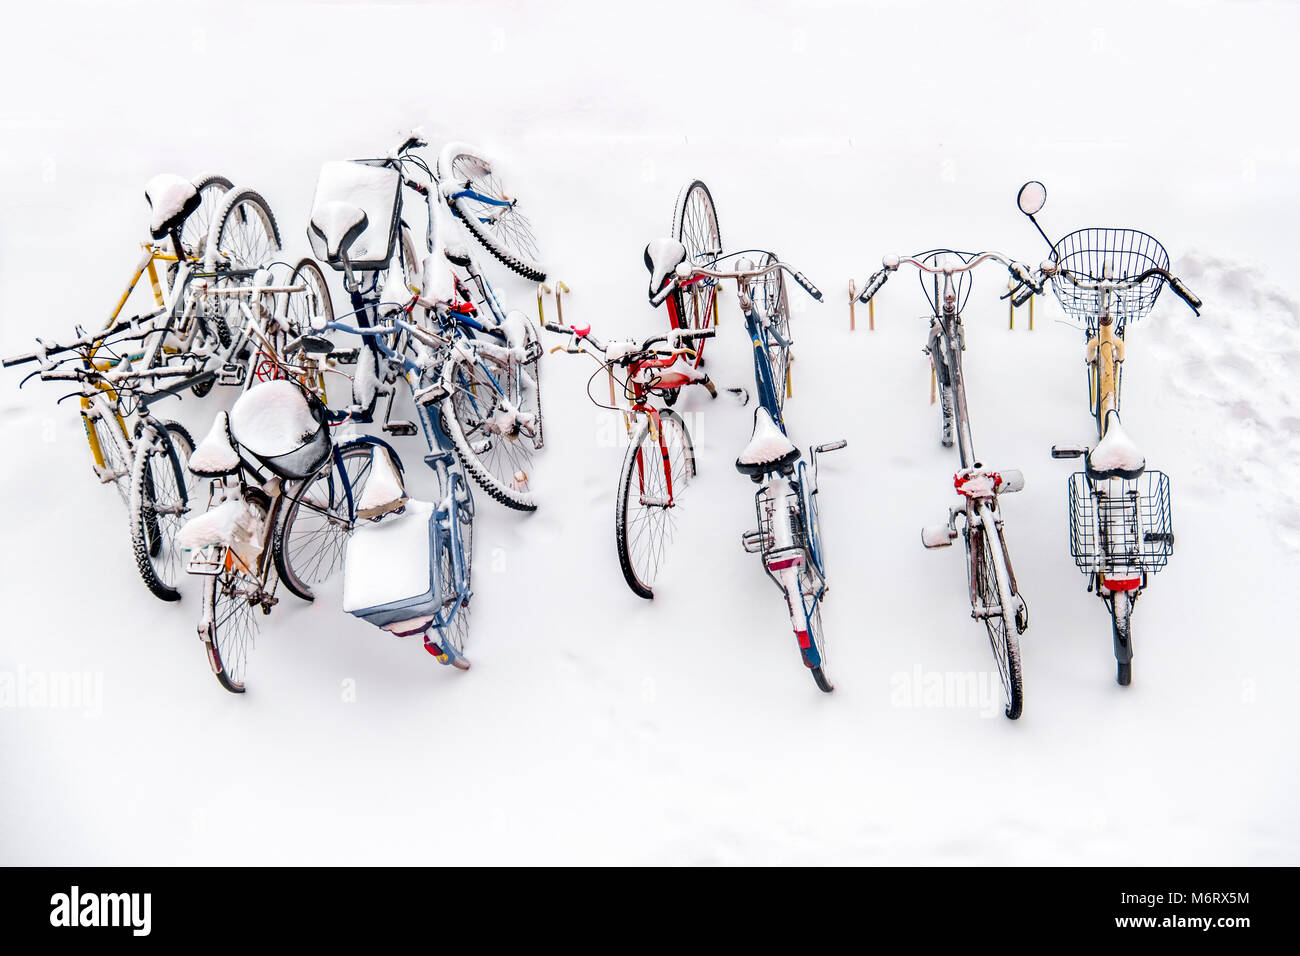 Prêt de bicyclettes dans la neige - hiver blanc fond vue ci-dessus Banque D'Images